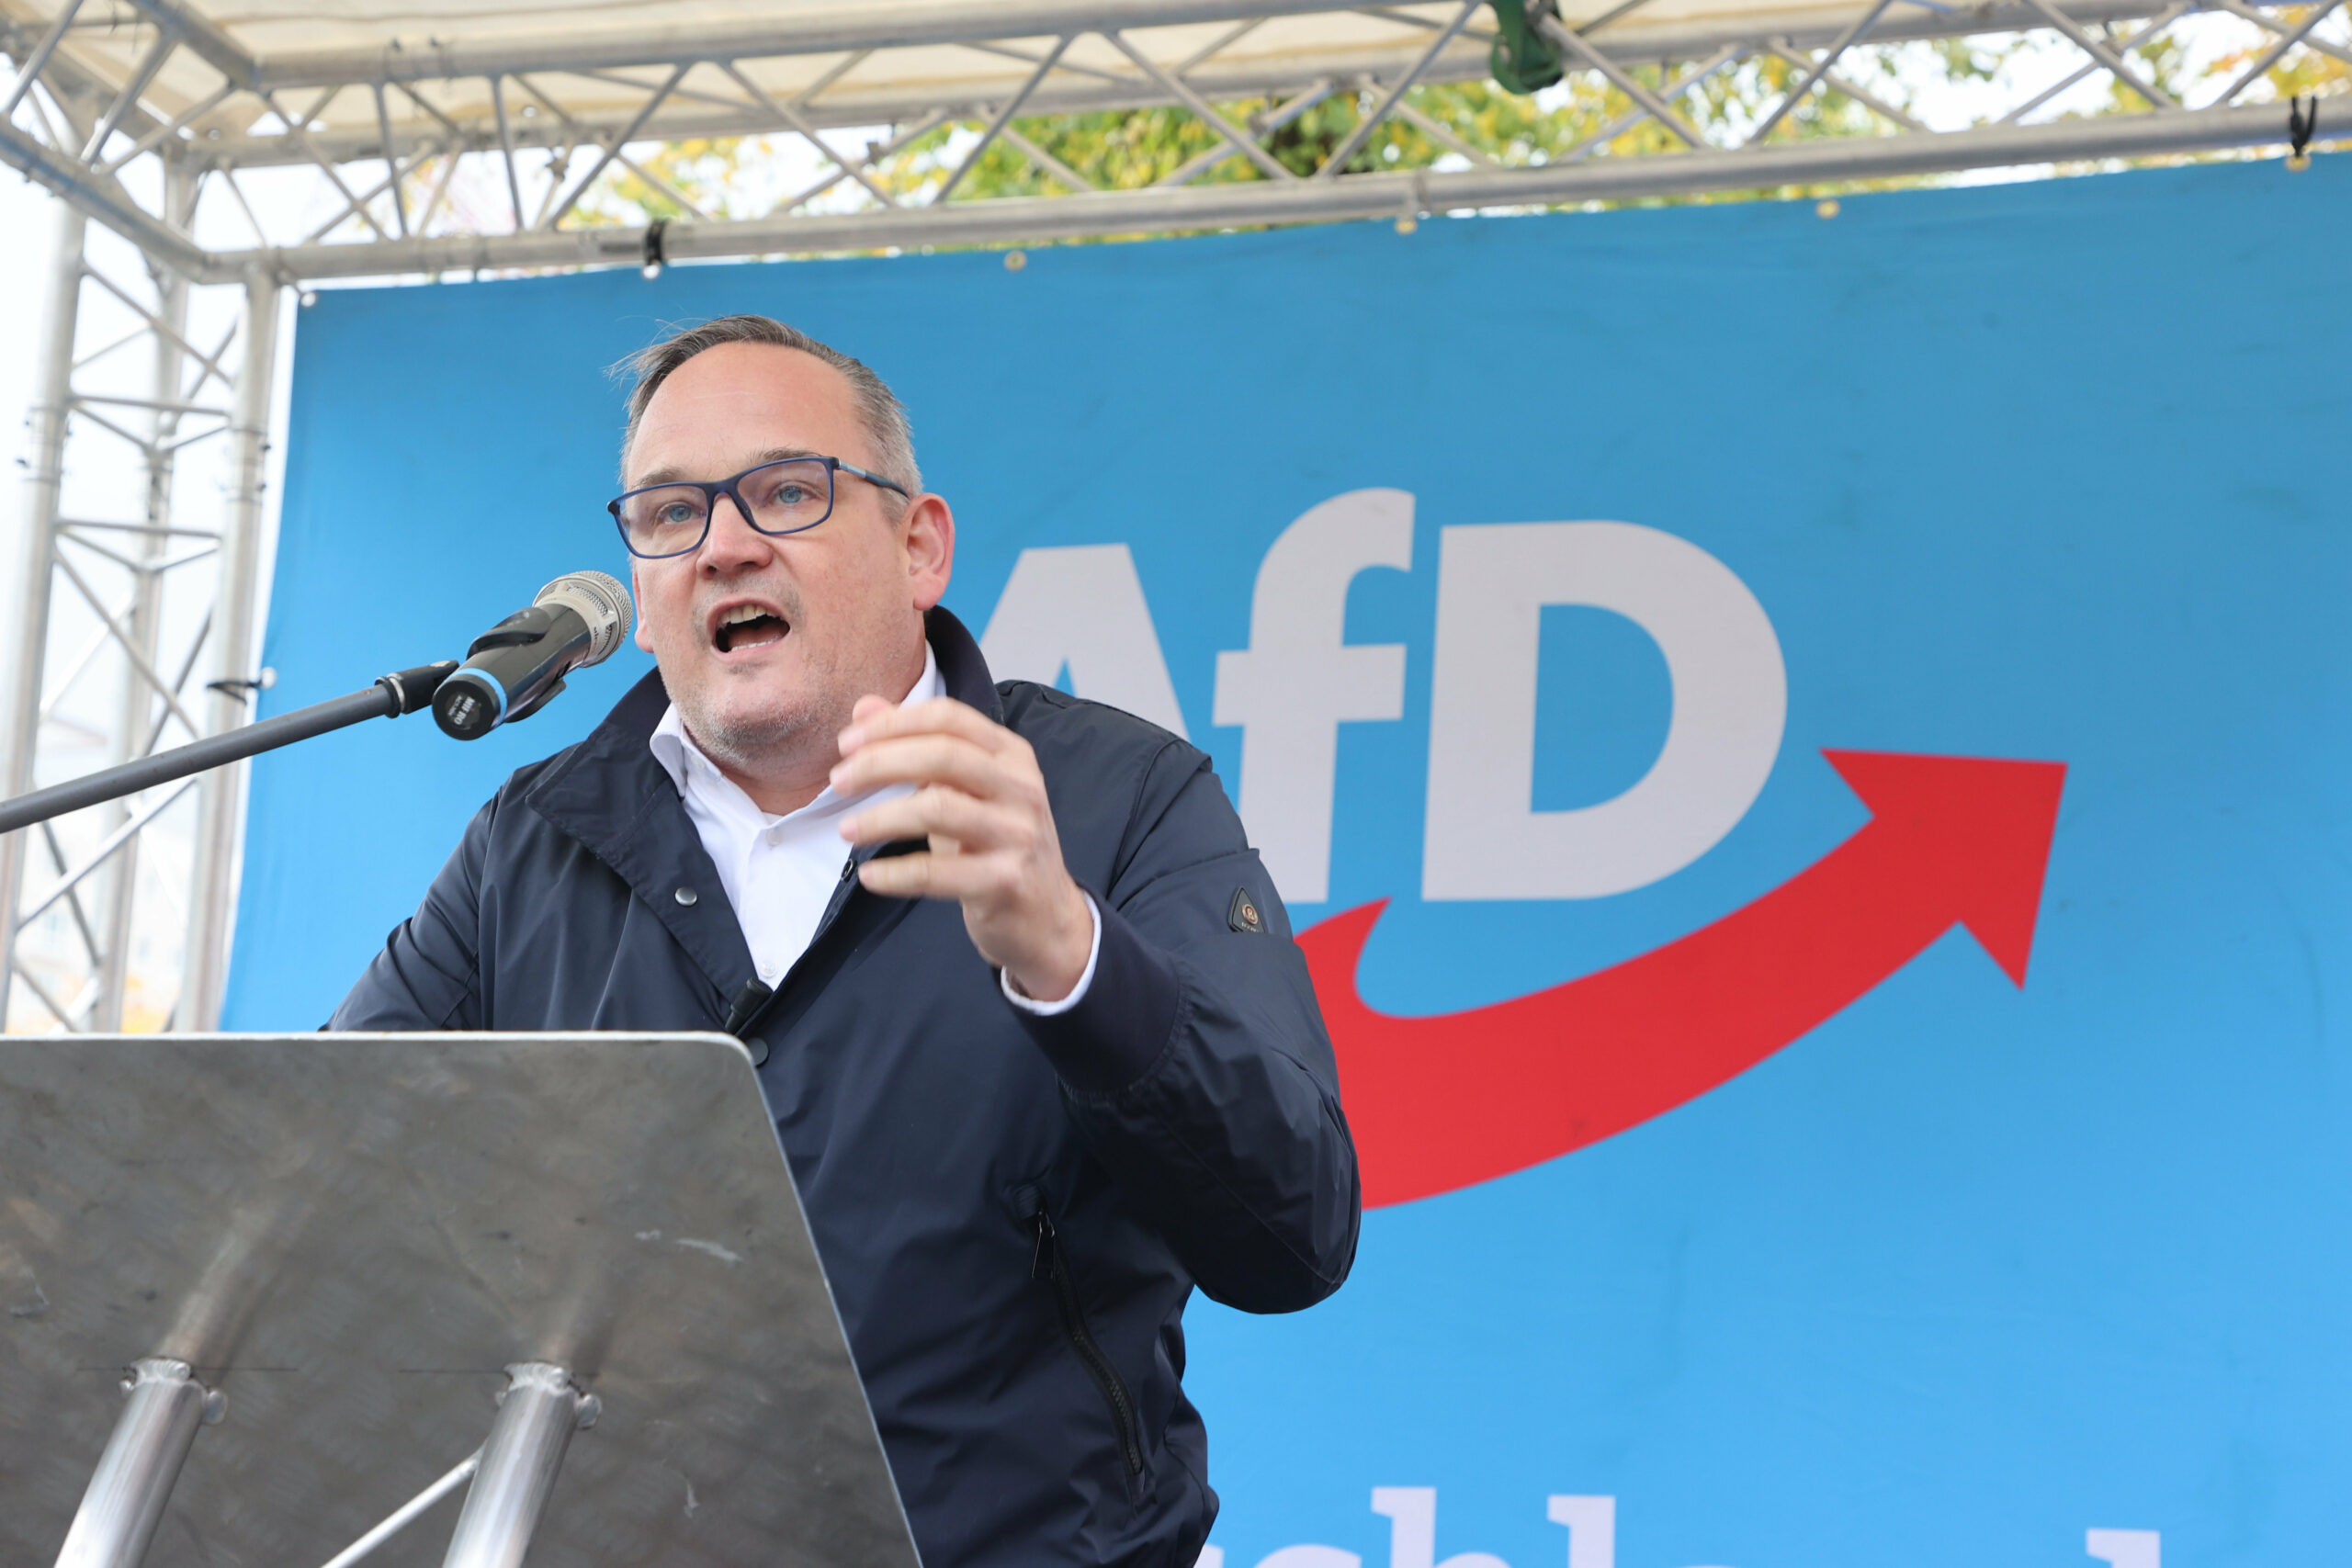 Martin Reichardt ist AfD-Vorsitzender in Sachsen-Anhalt. Sein Landesverband gilt jetzt als „gesichert rechtsextrem“.